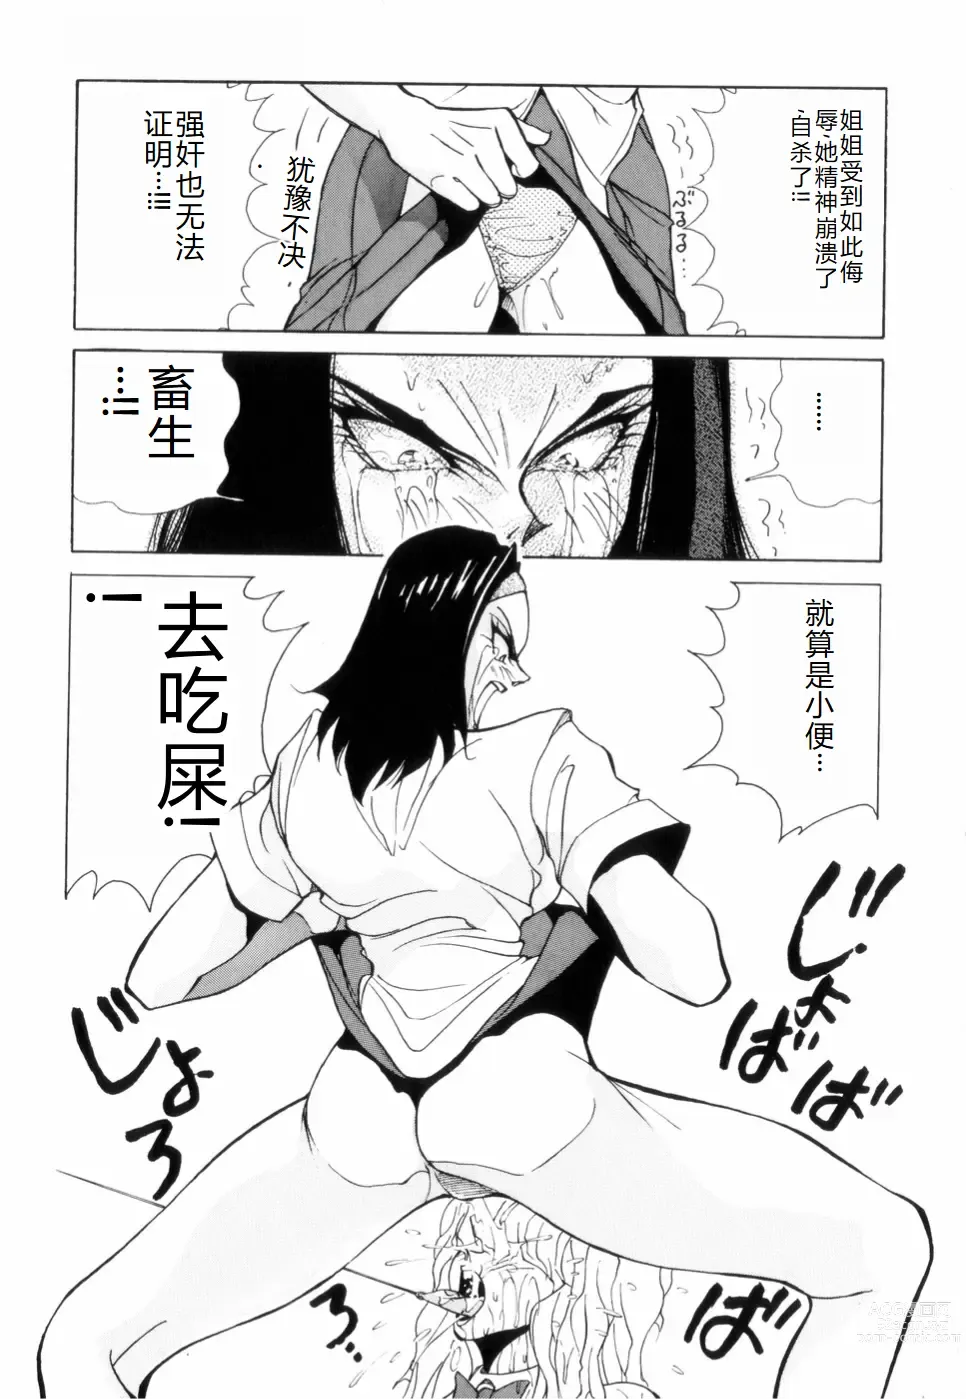 Page 153 of manga Hakujuu no Hasha